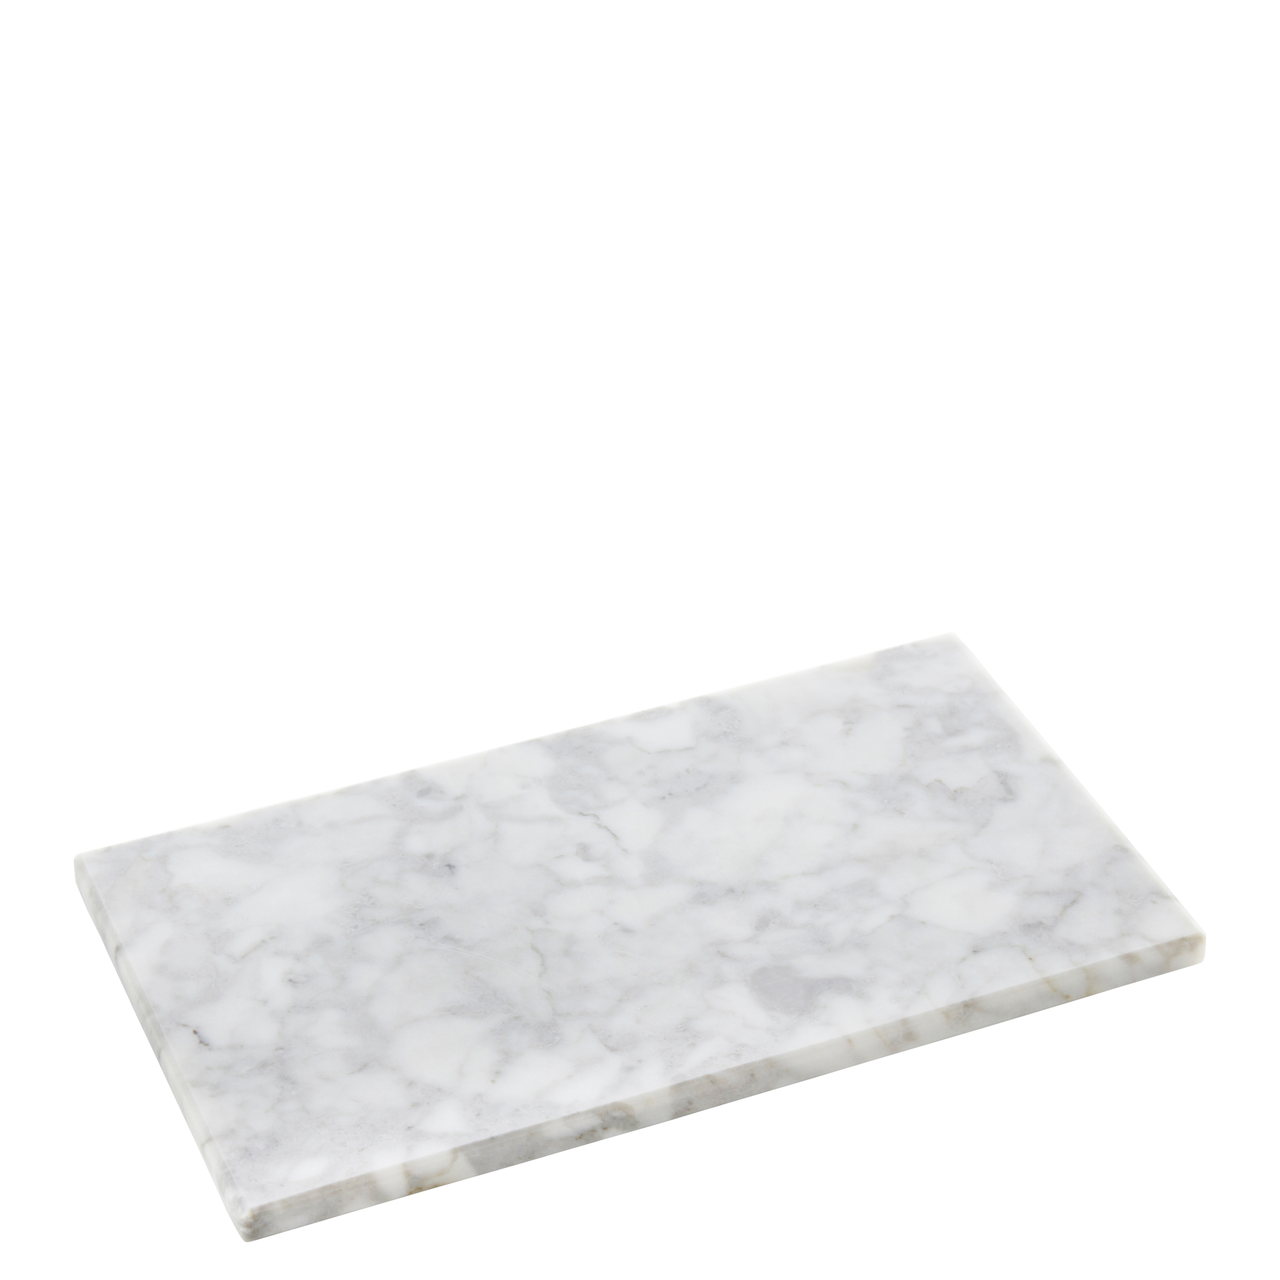 Plate marble white 28x16x1.2cm